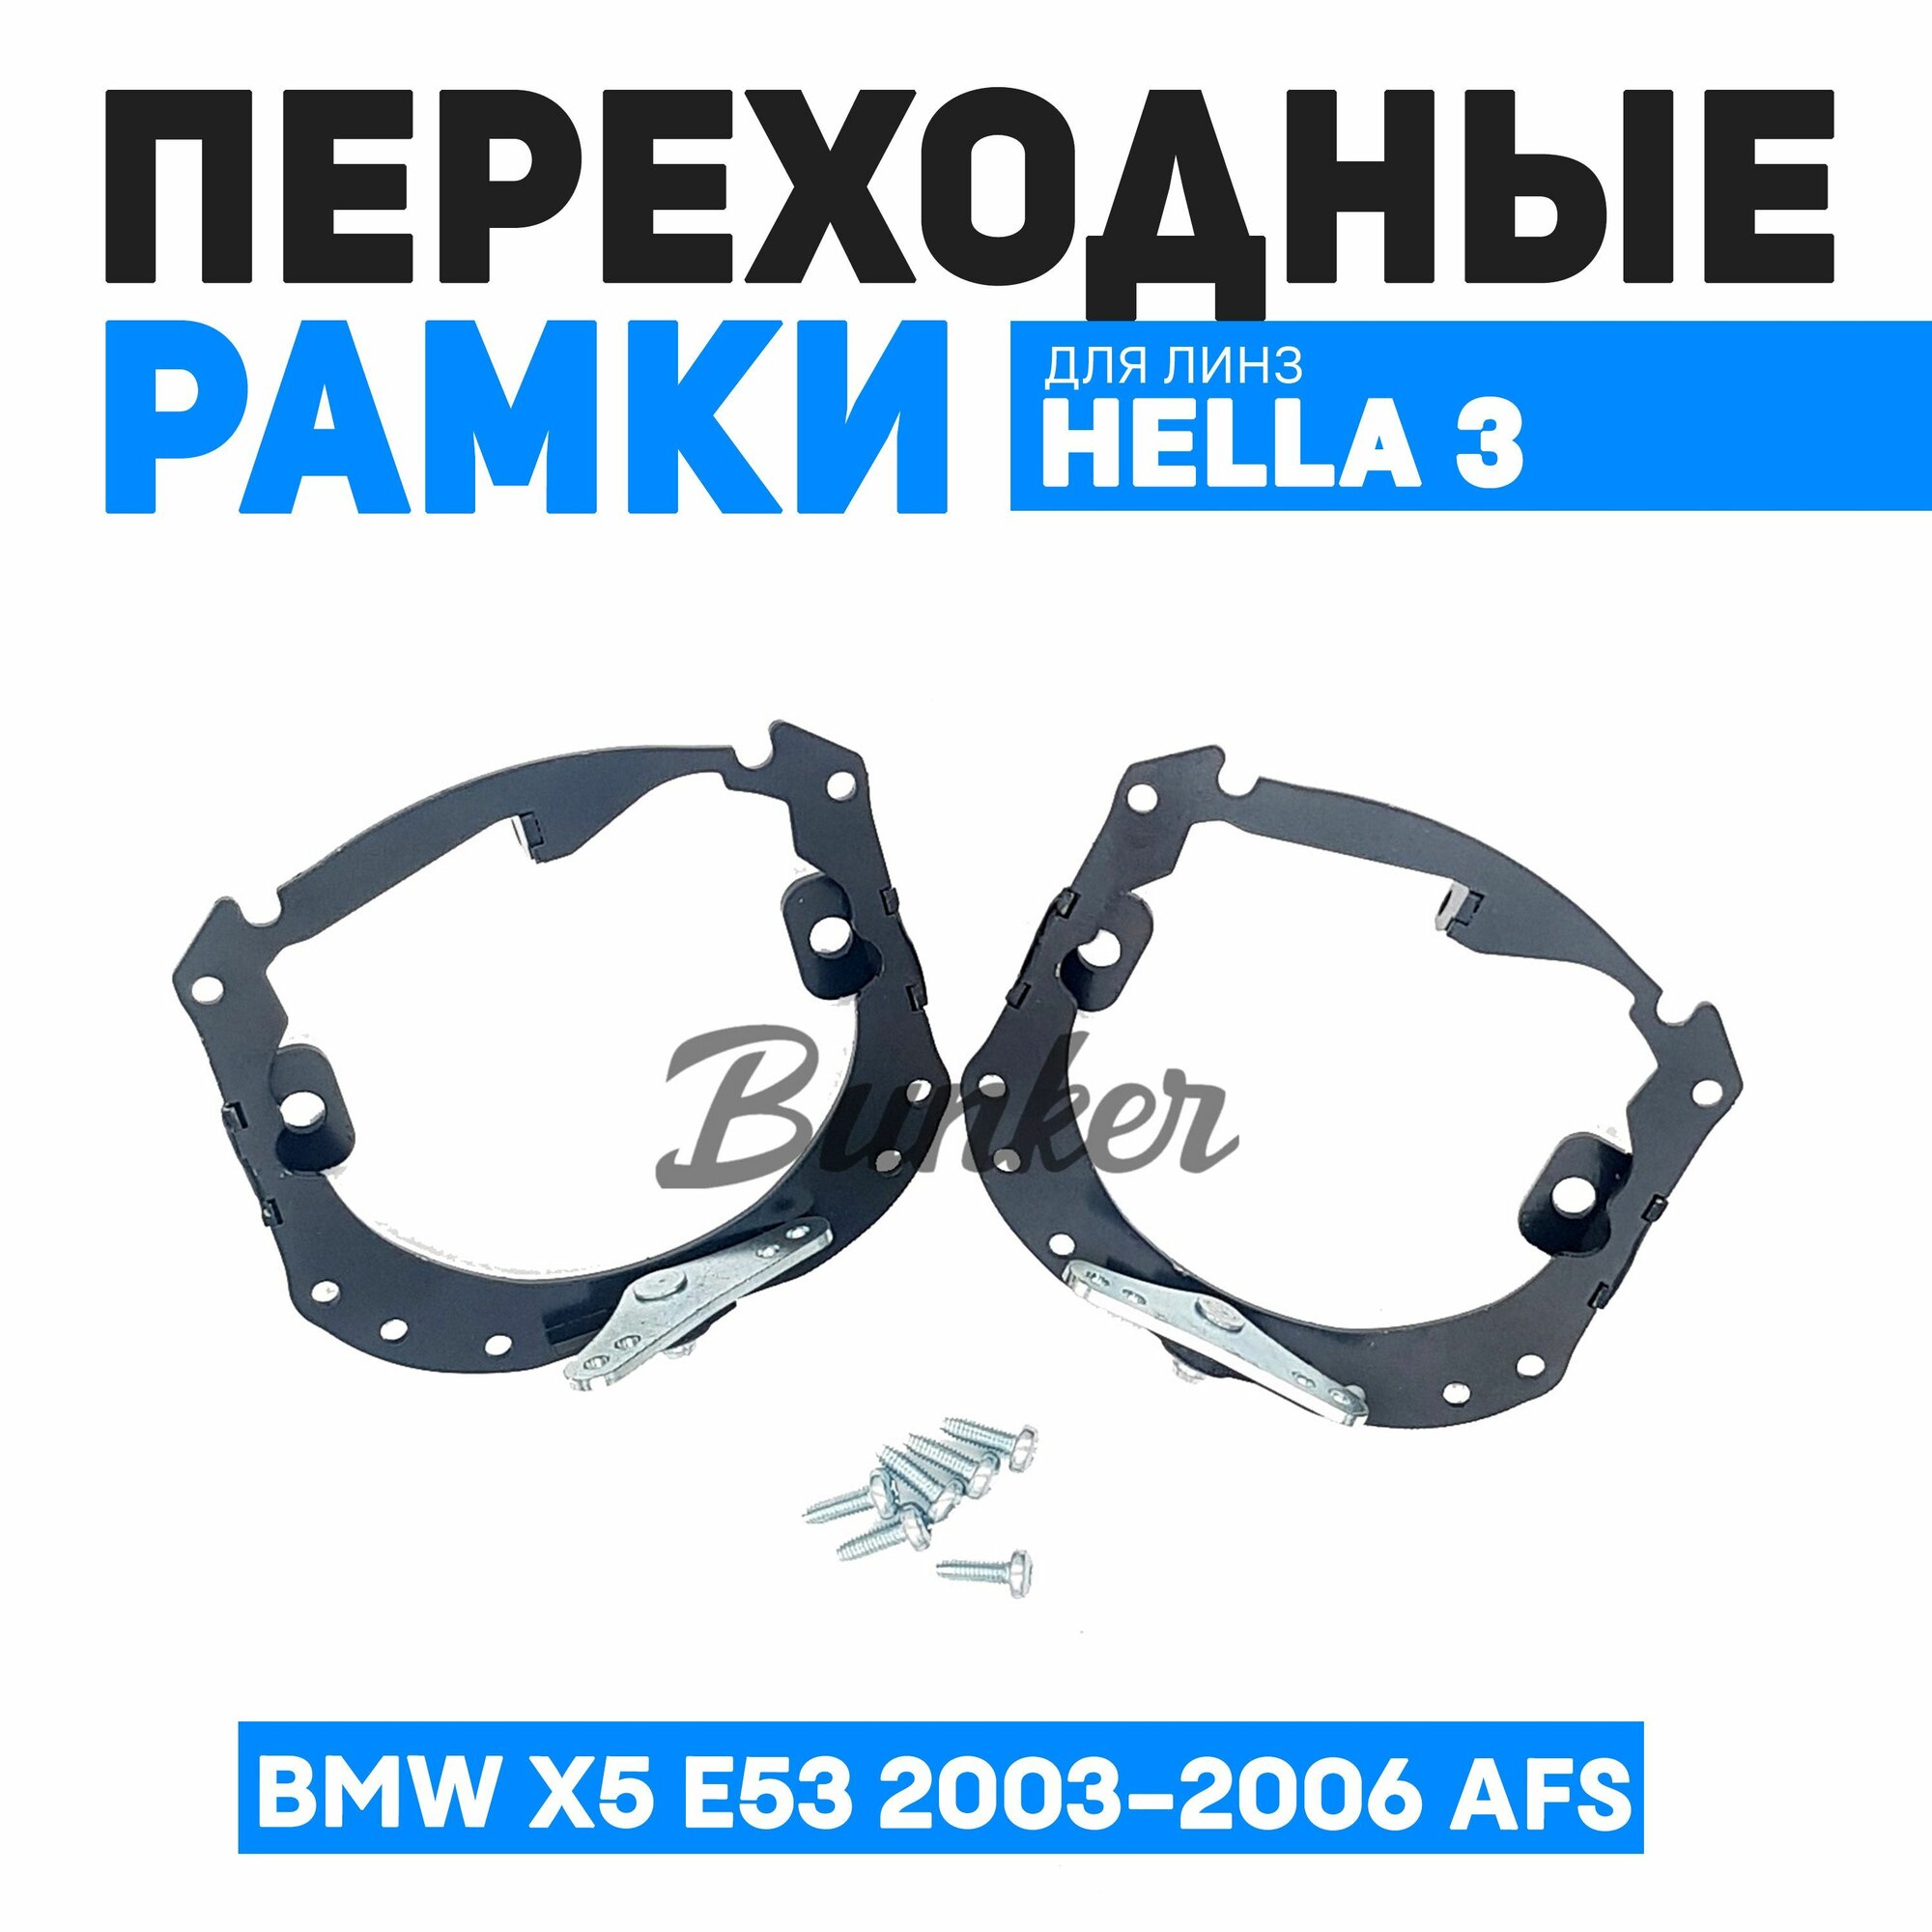 Переходные рамки для замены линз BMW X5 E53 рестайлинг 2003-2006 AFS